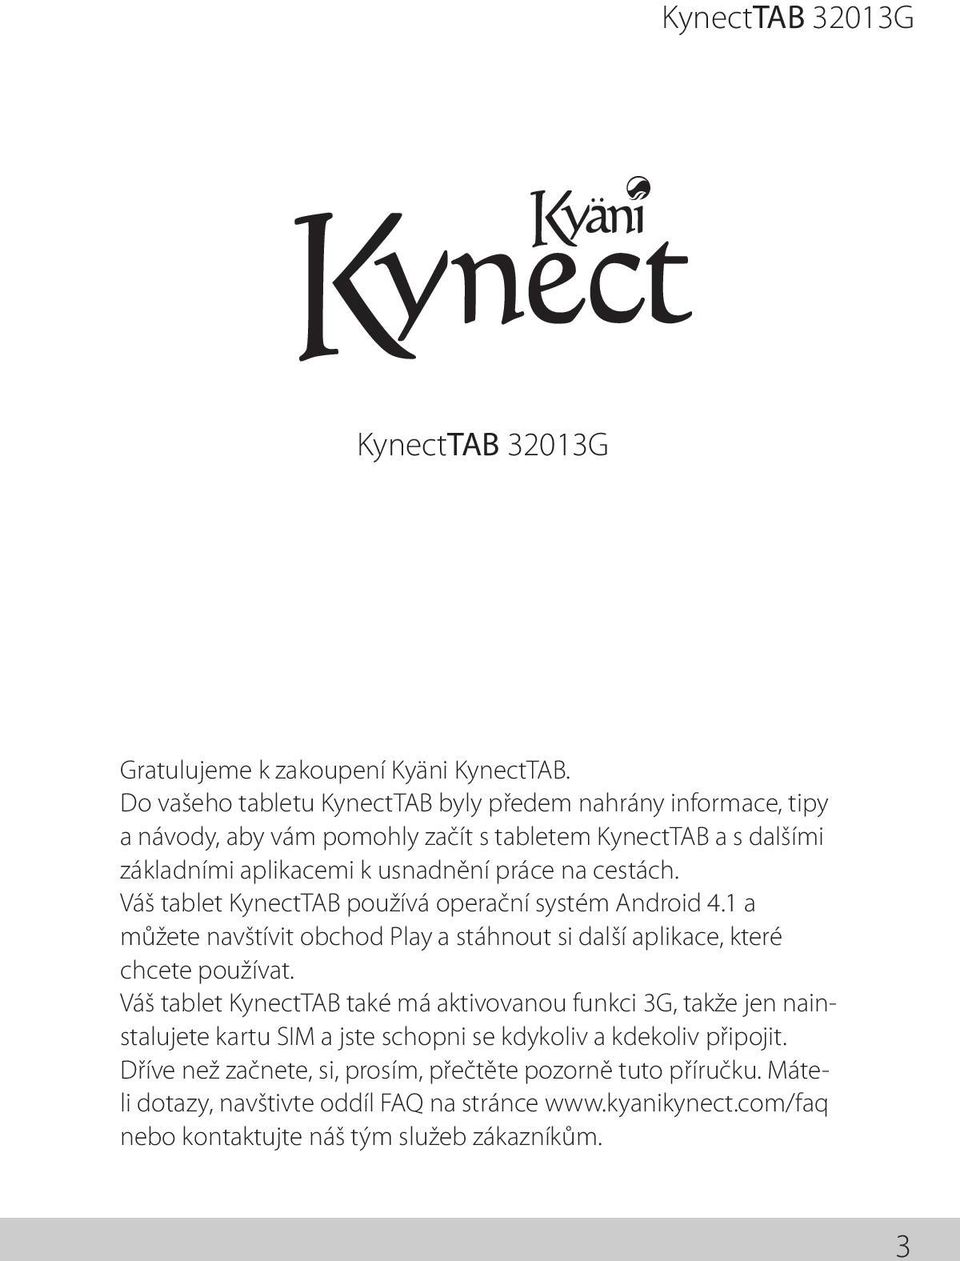 cestách. Váš tablet KynectTAB používá operační systém Android 4.1 a můžete navštívit obchod Play a stáhnout si další aplikace, které chcete používat.